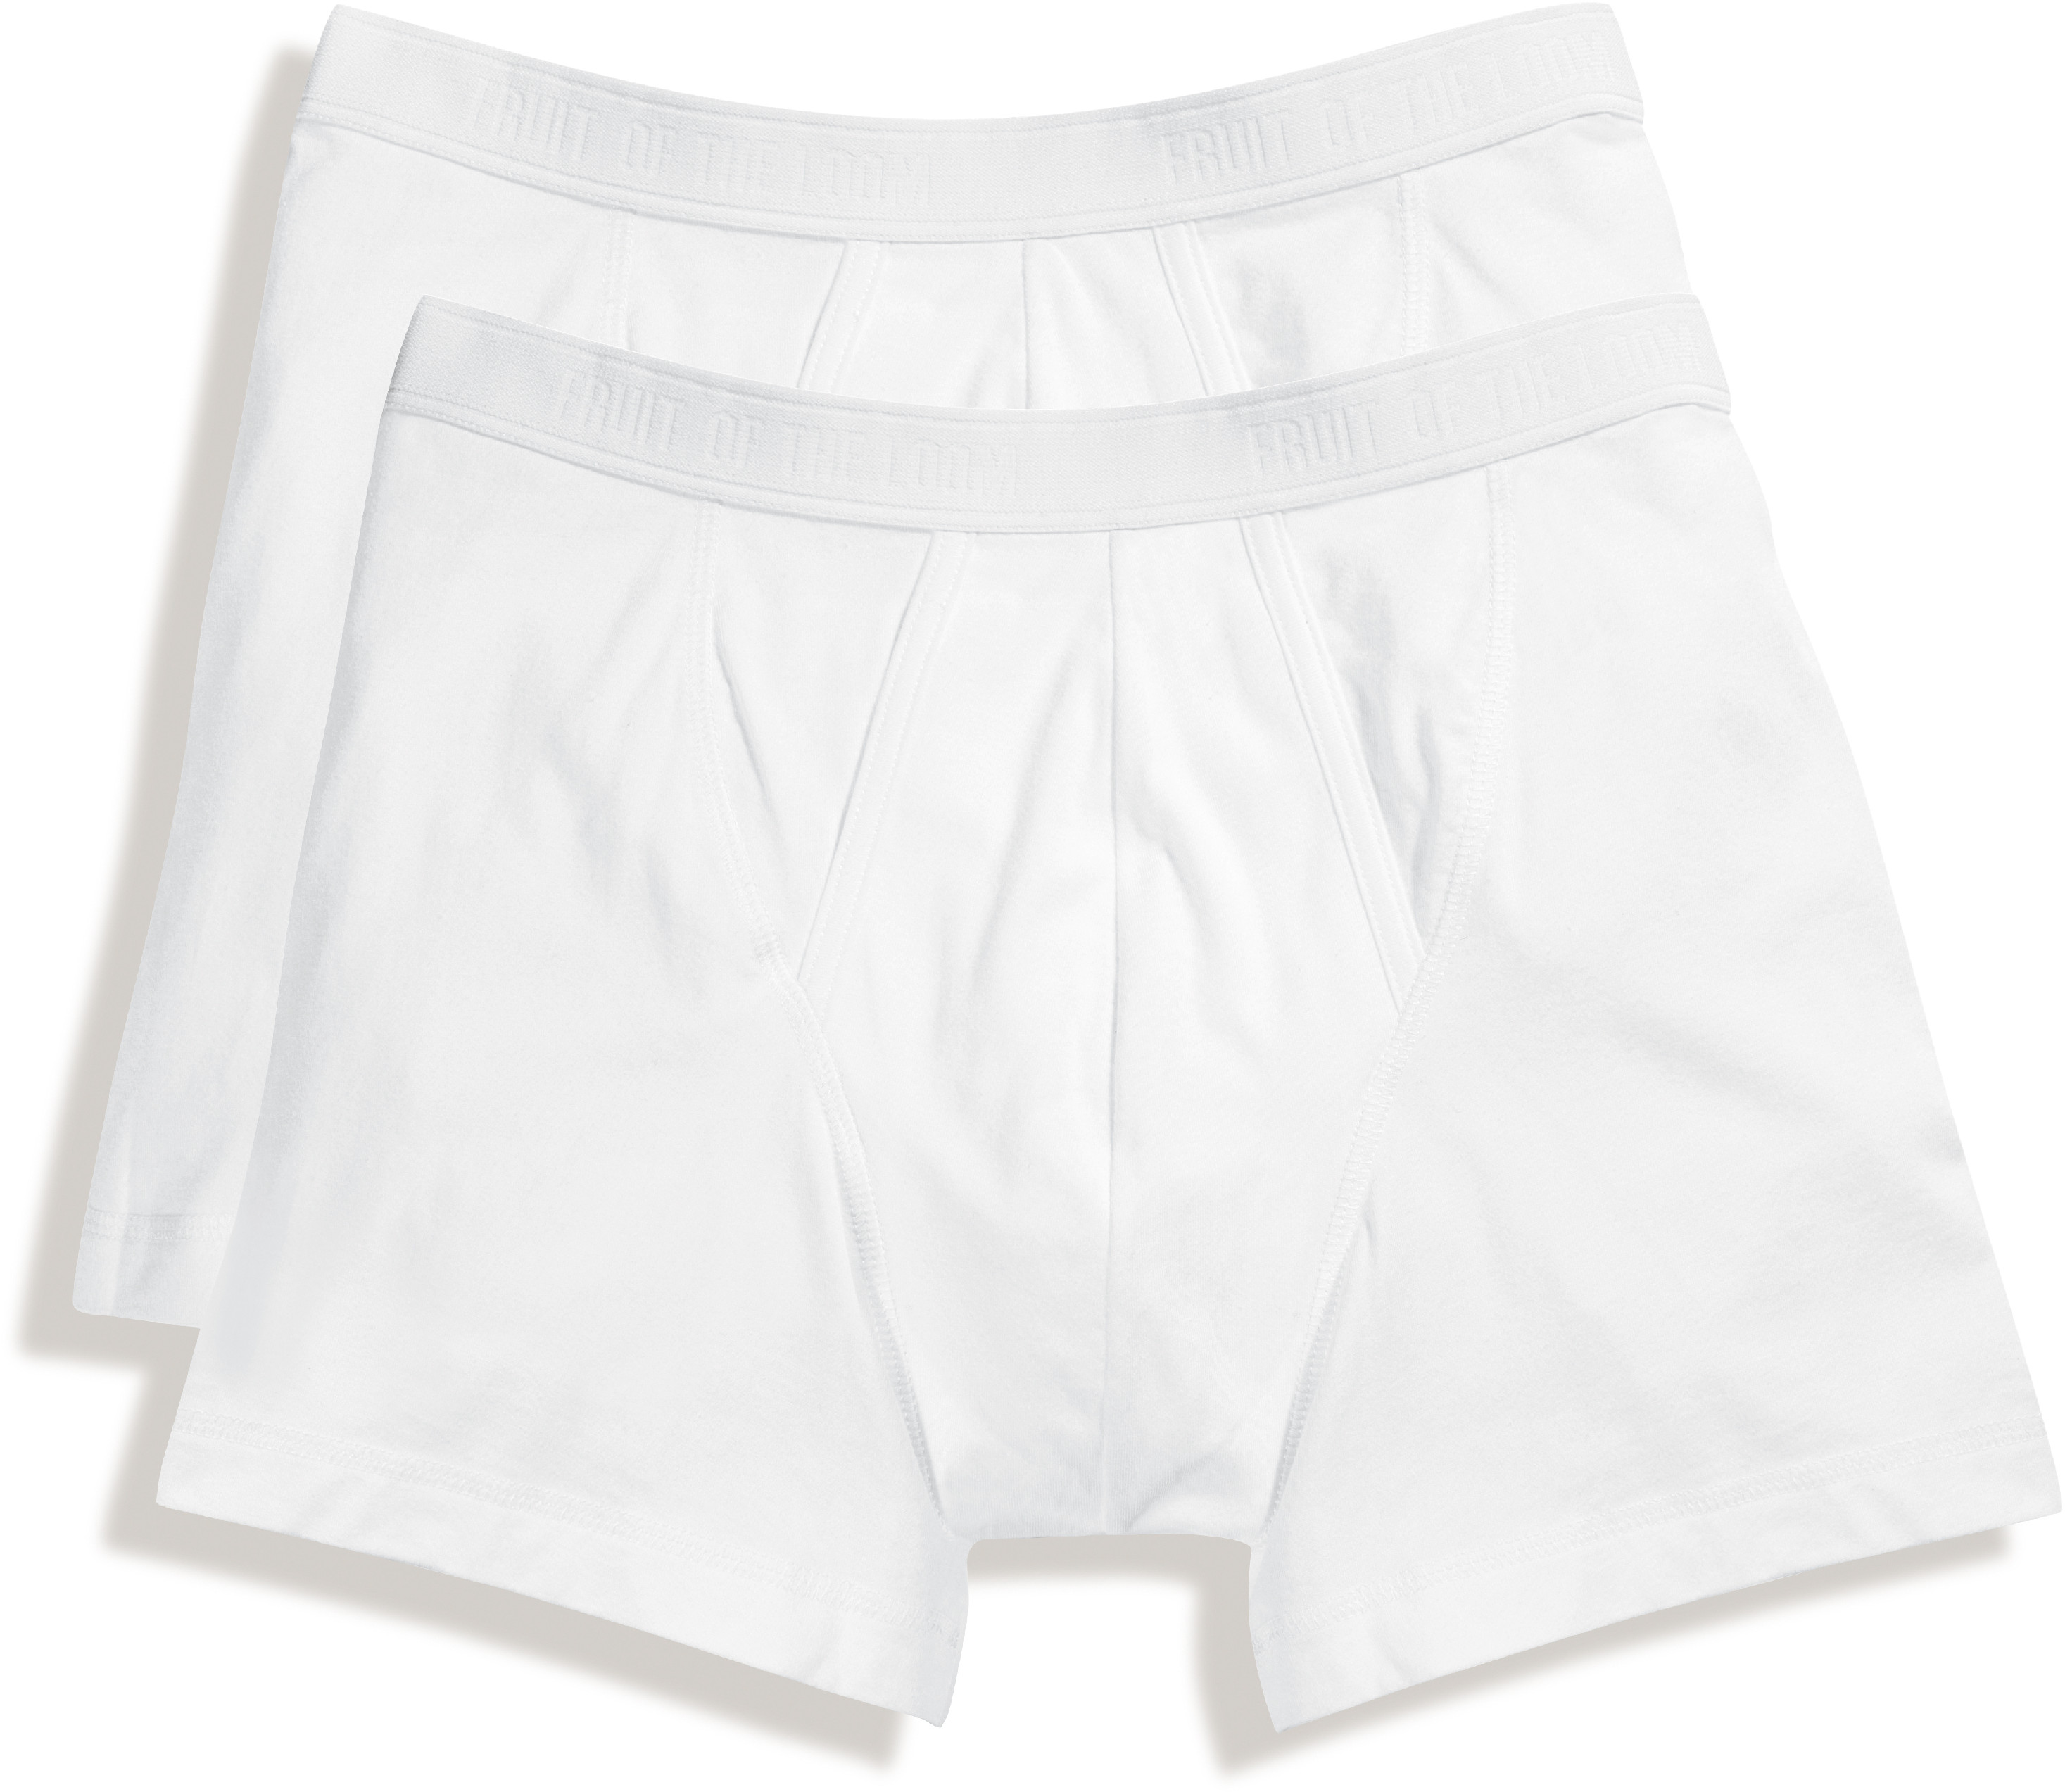 Pánské boxerky, balení po 2 ks Barva: White, Velikost: L